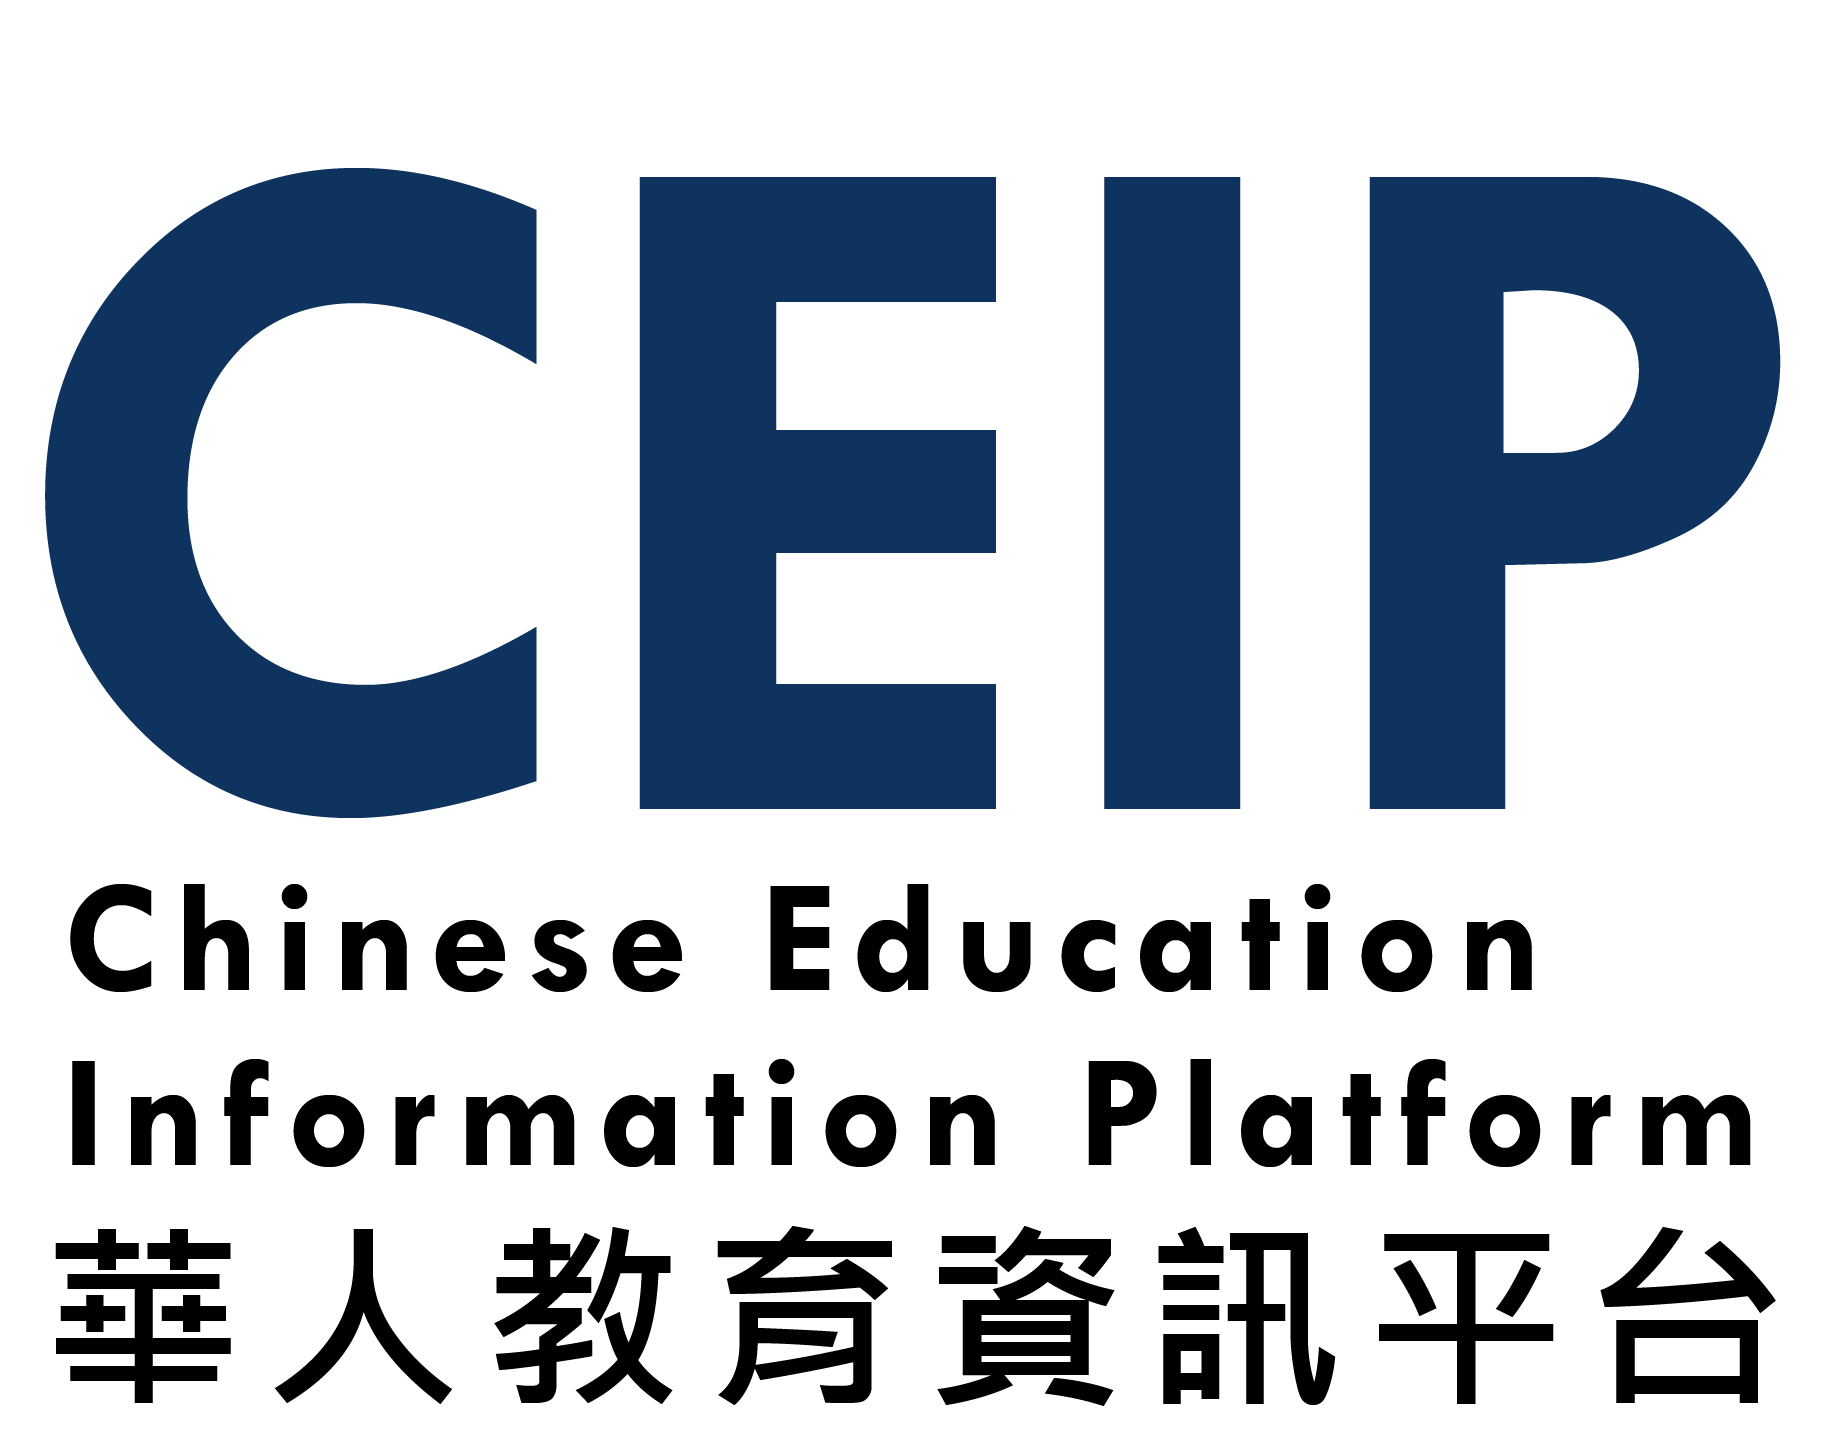 CEIP 華人教育資訊平台